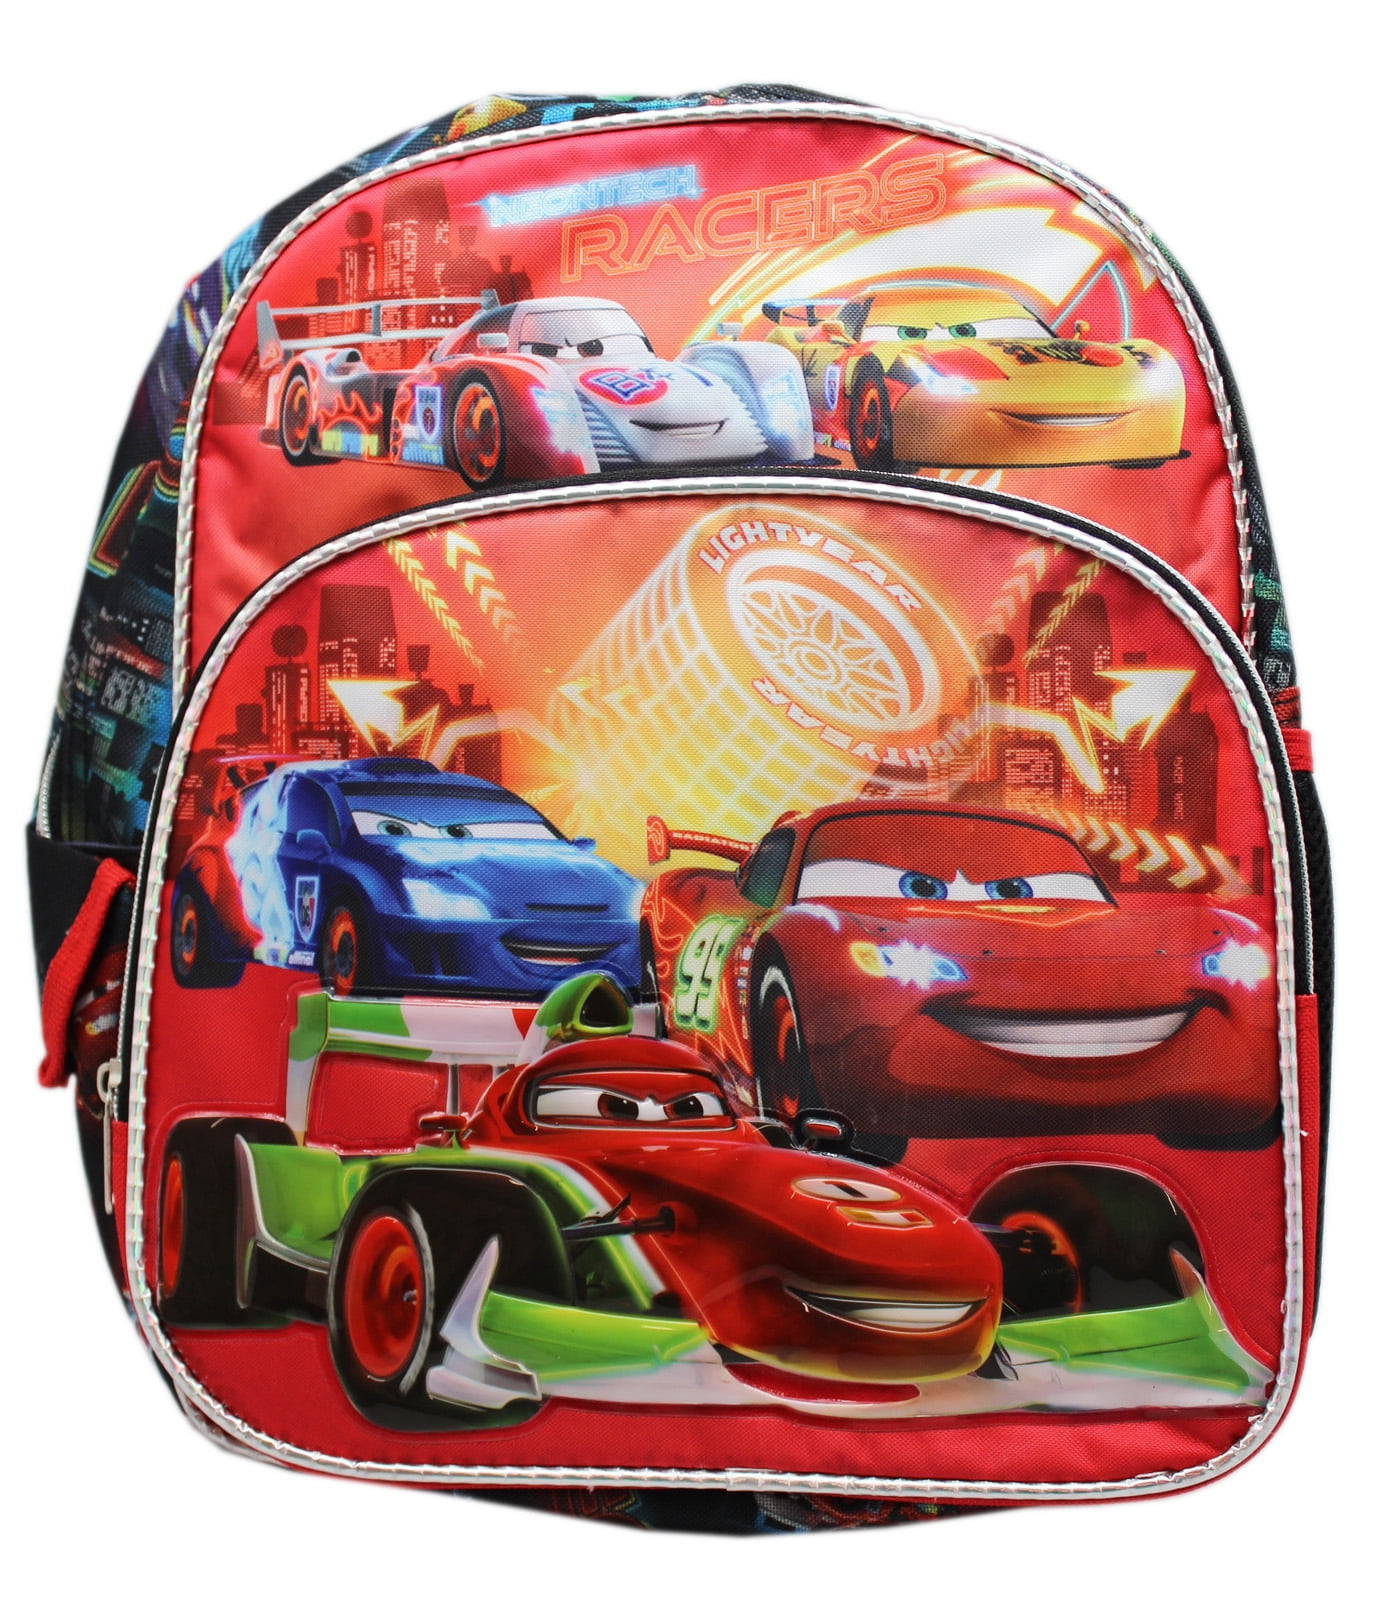 NEW DISNEY CARS RACERS EDGE NURSERY SCHOOL JUNIOR TODDLER KIDS BOYS BACKPACK BAG 